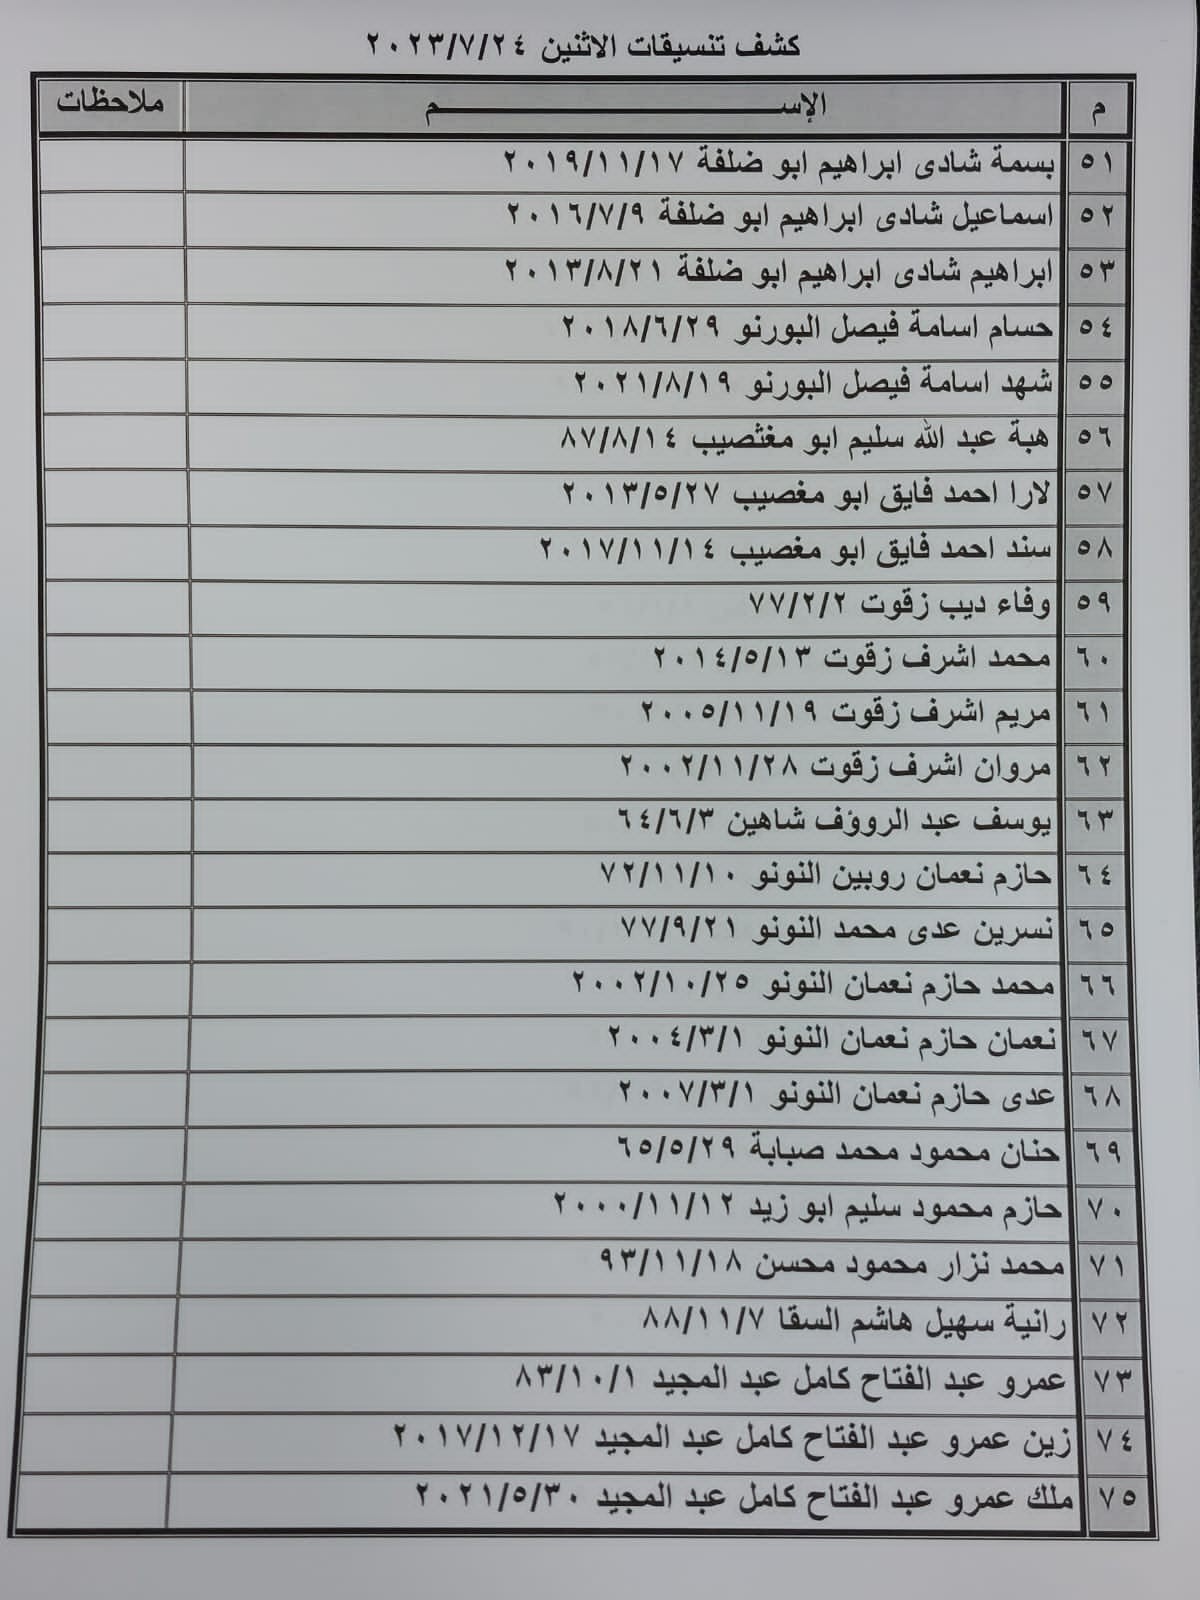 بالأسماء: كشف "تنسيقات مصرية" للسفر عبر معبر رفح الإثنين 24 يوليو 2023